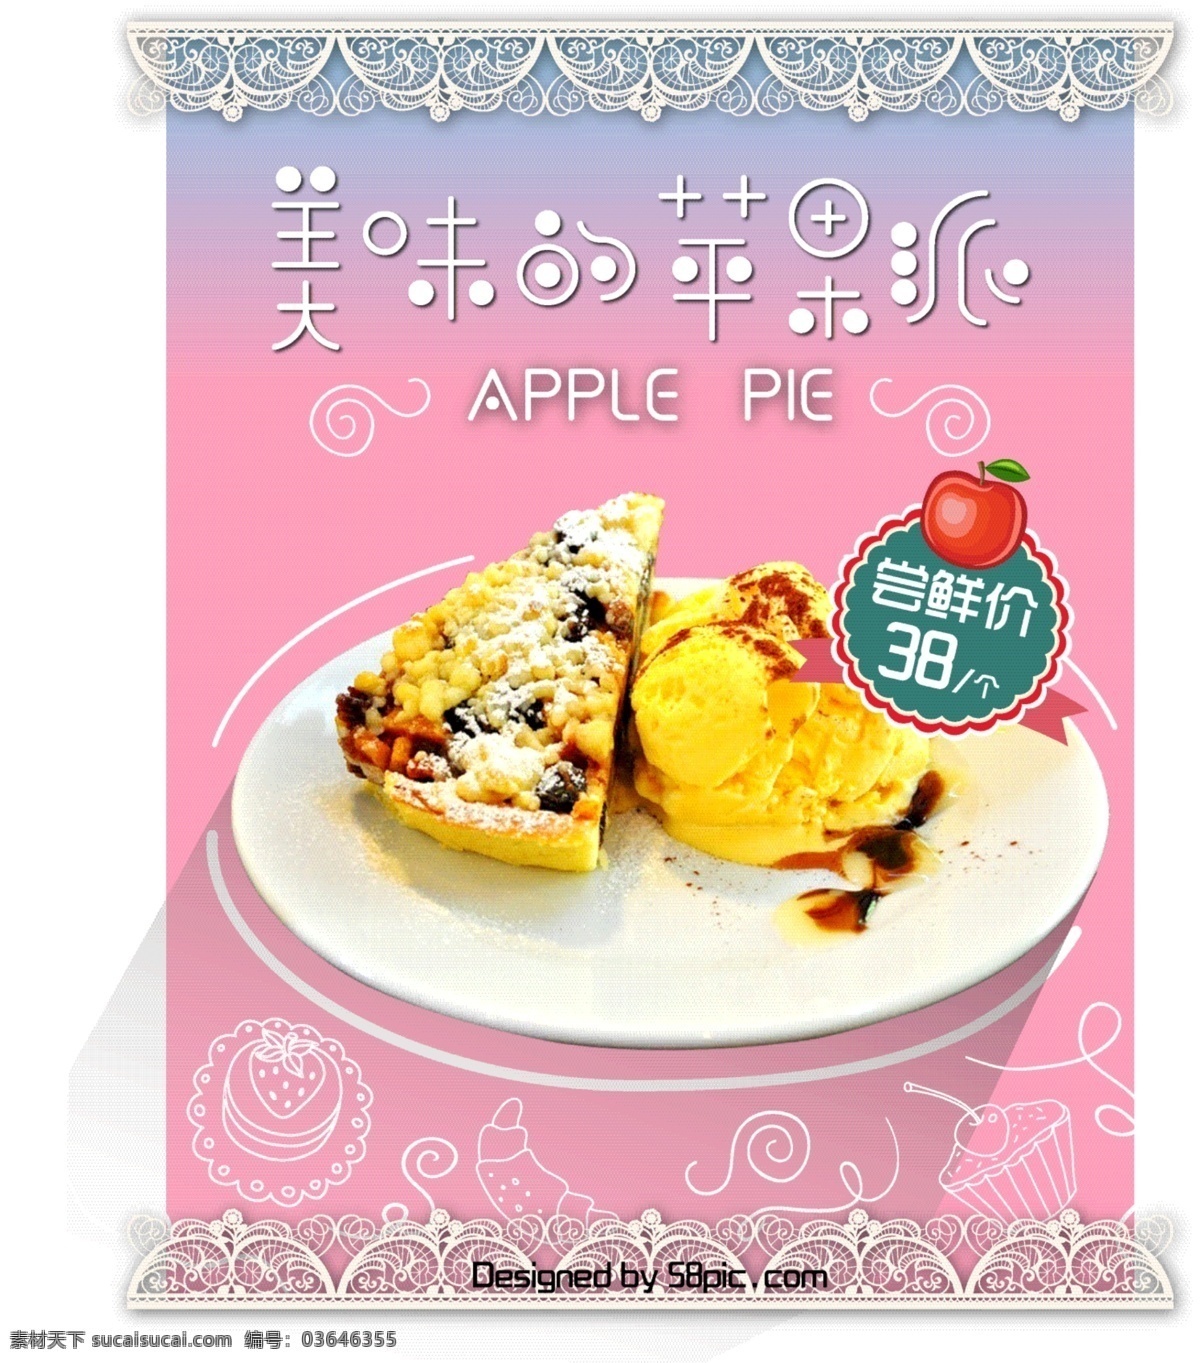 美食 苹果派 甜品 宣传海报 甜品海报 ai素材 粉色小清新